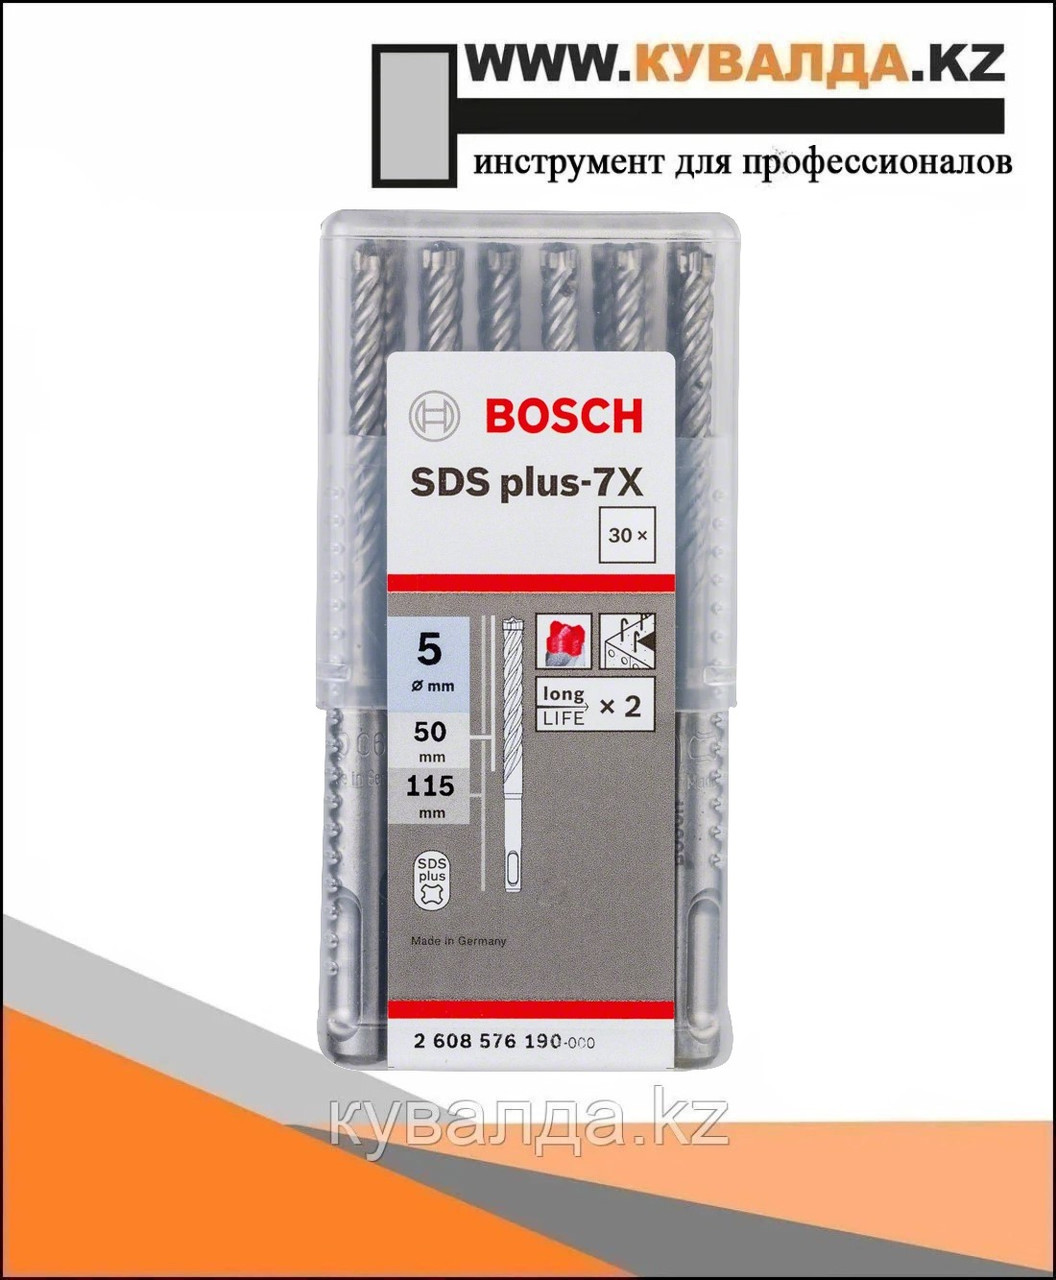 Bosch Сверло SDS plus-7X 5x50x115 30шт